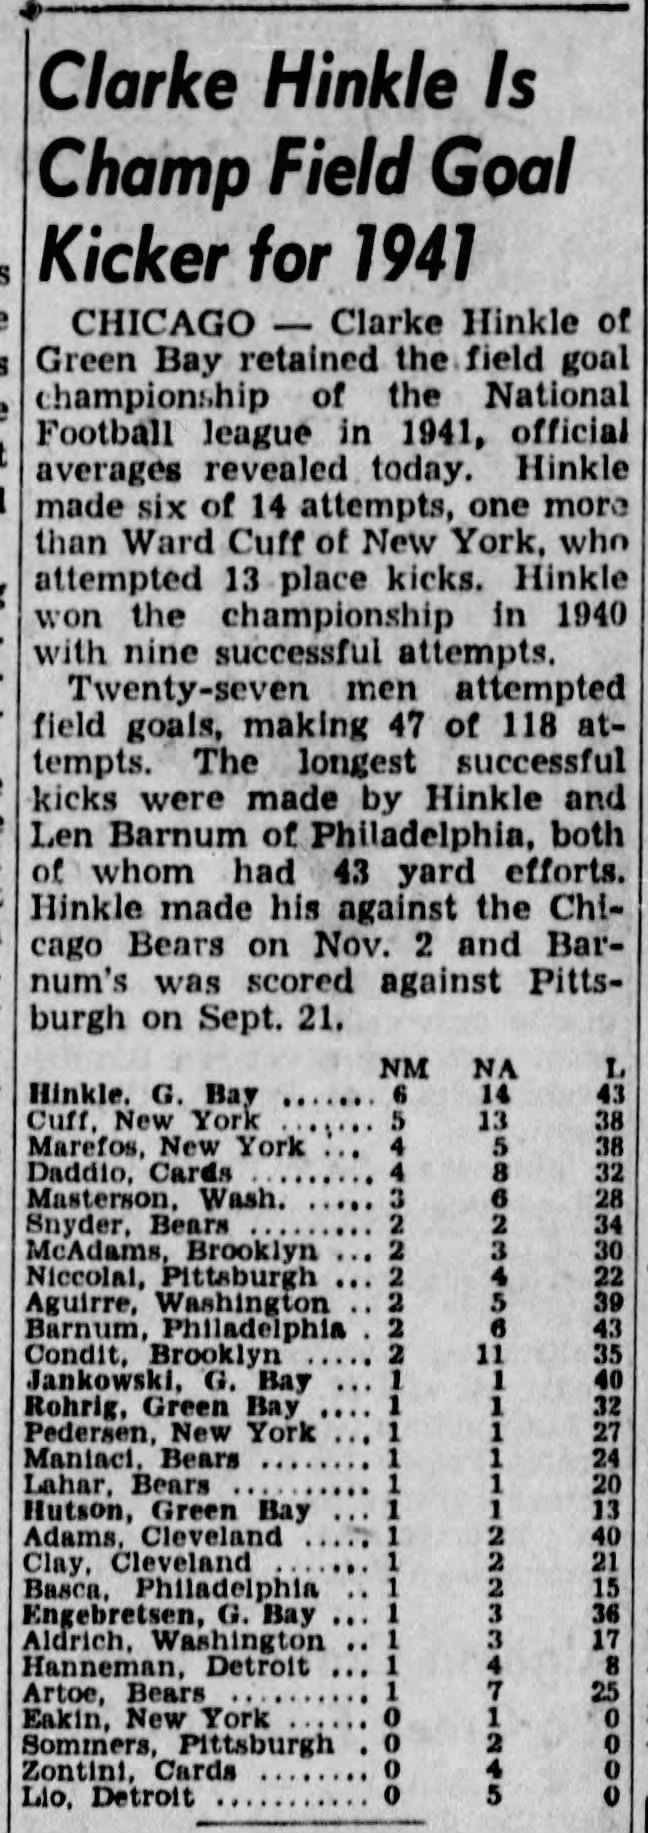 Clarke Hinkle Is Champ Field Goal Kicker for 1941